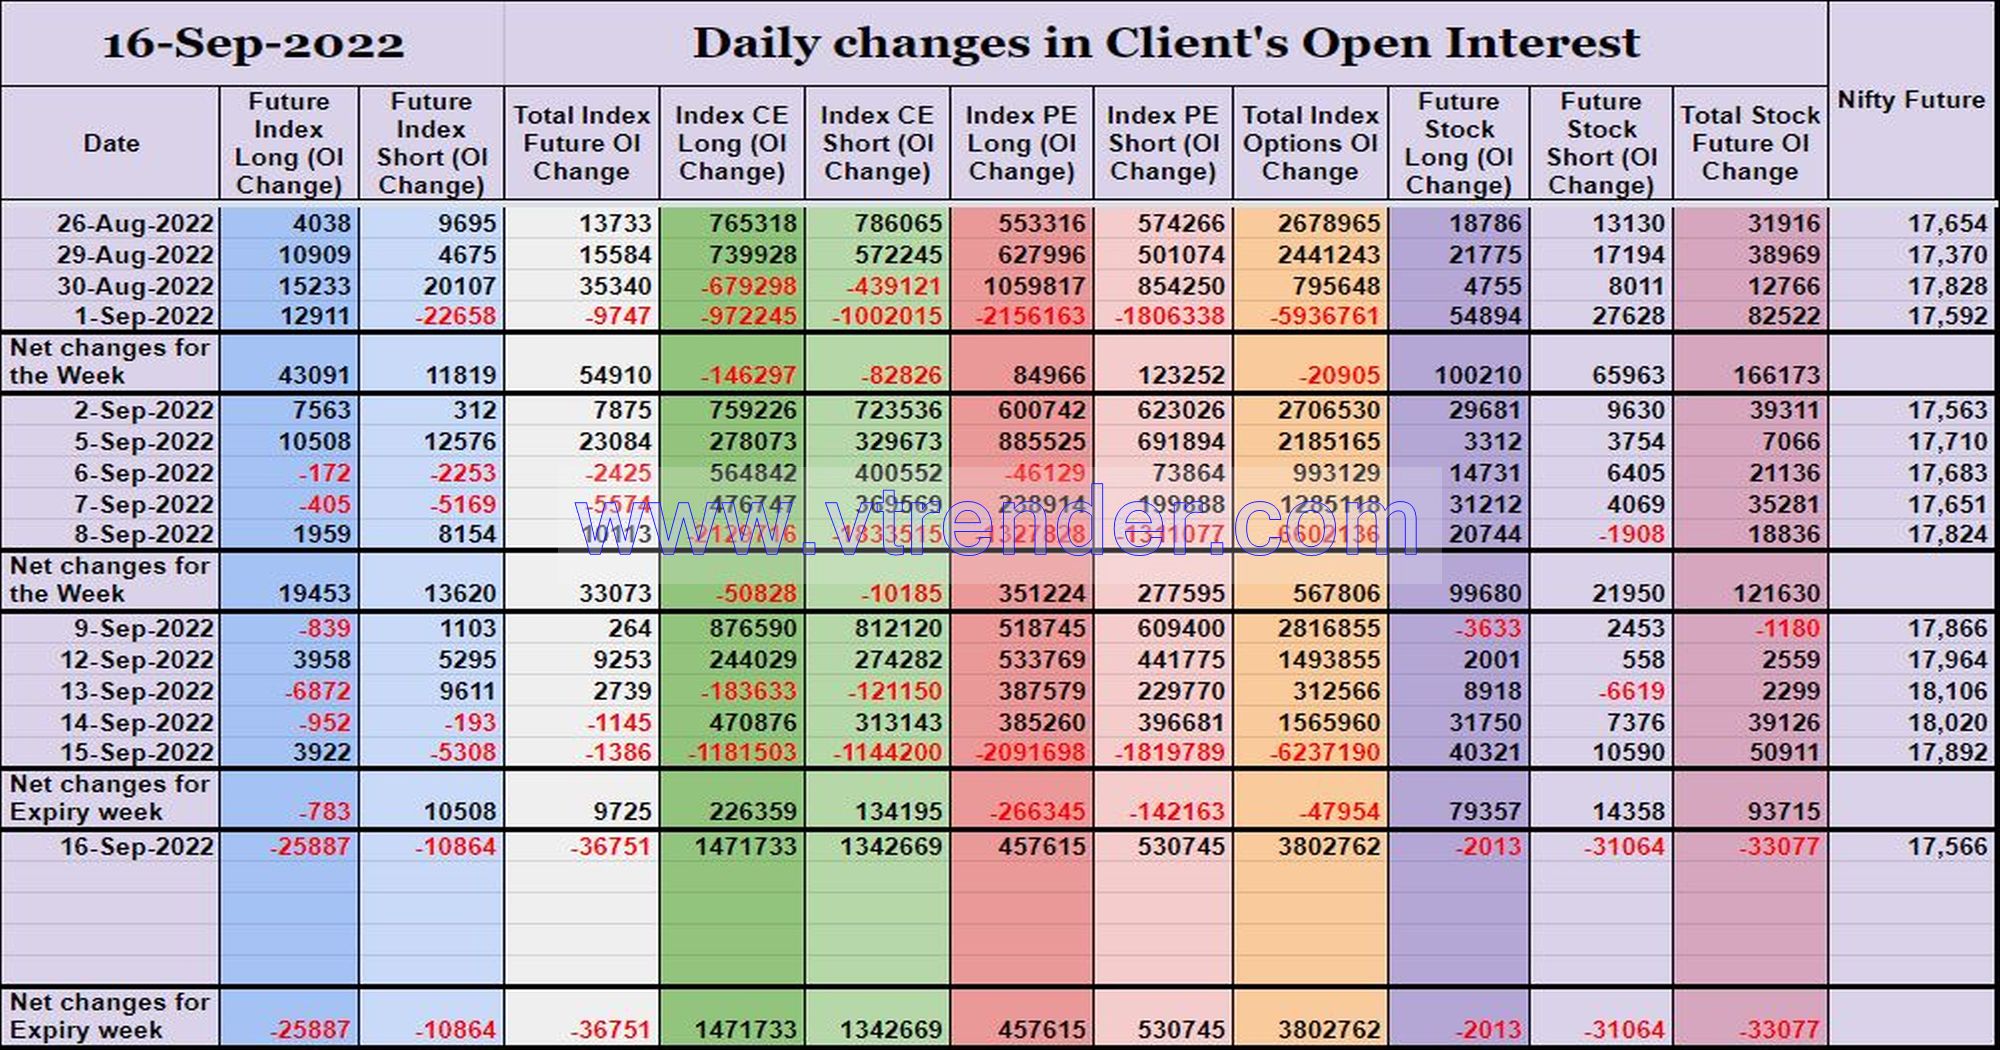 Clientoi16Sep Participantwise Open Interest (Weekly Changes) – 16Th Sep 2022 Client, Dii, Fii, Open Interest, Participantwise Open Interest, Props